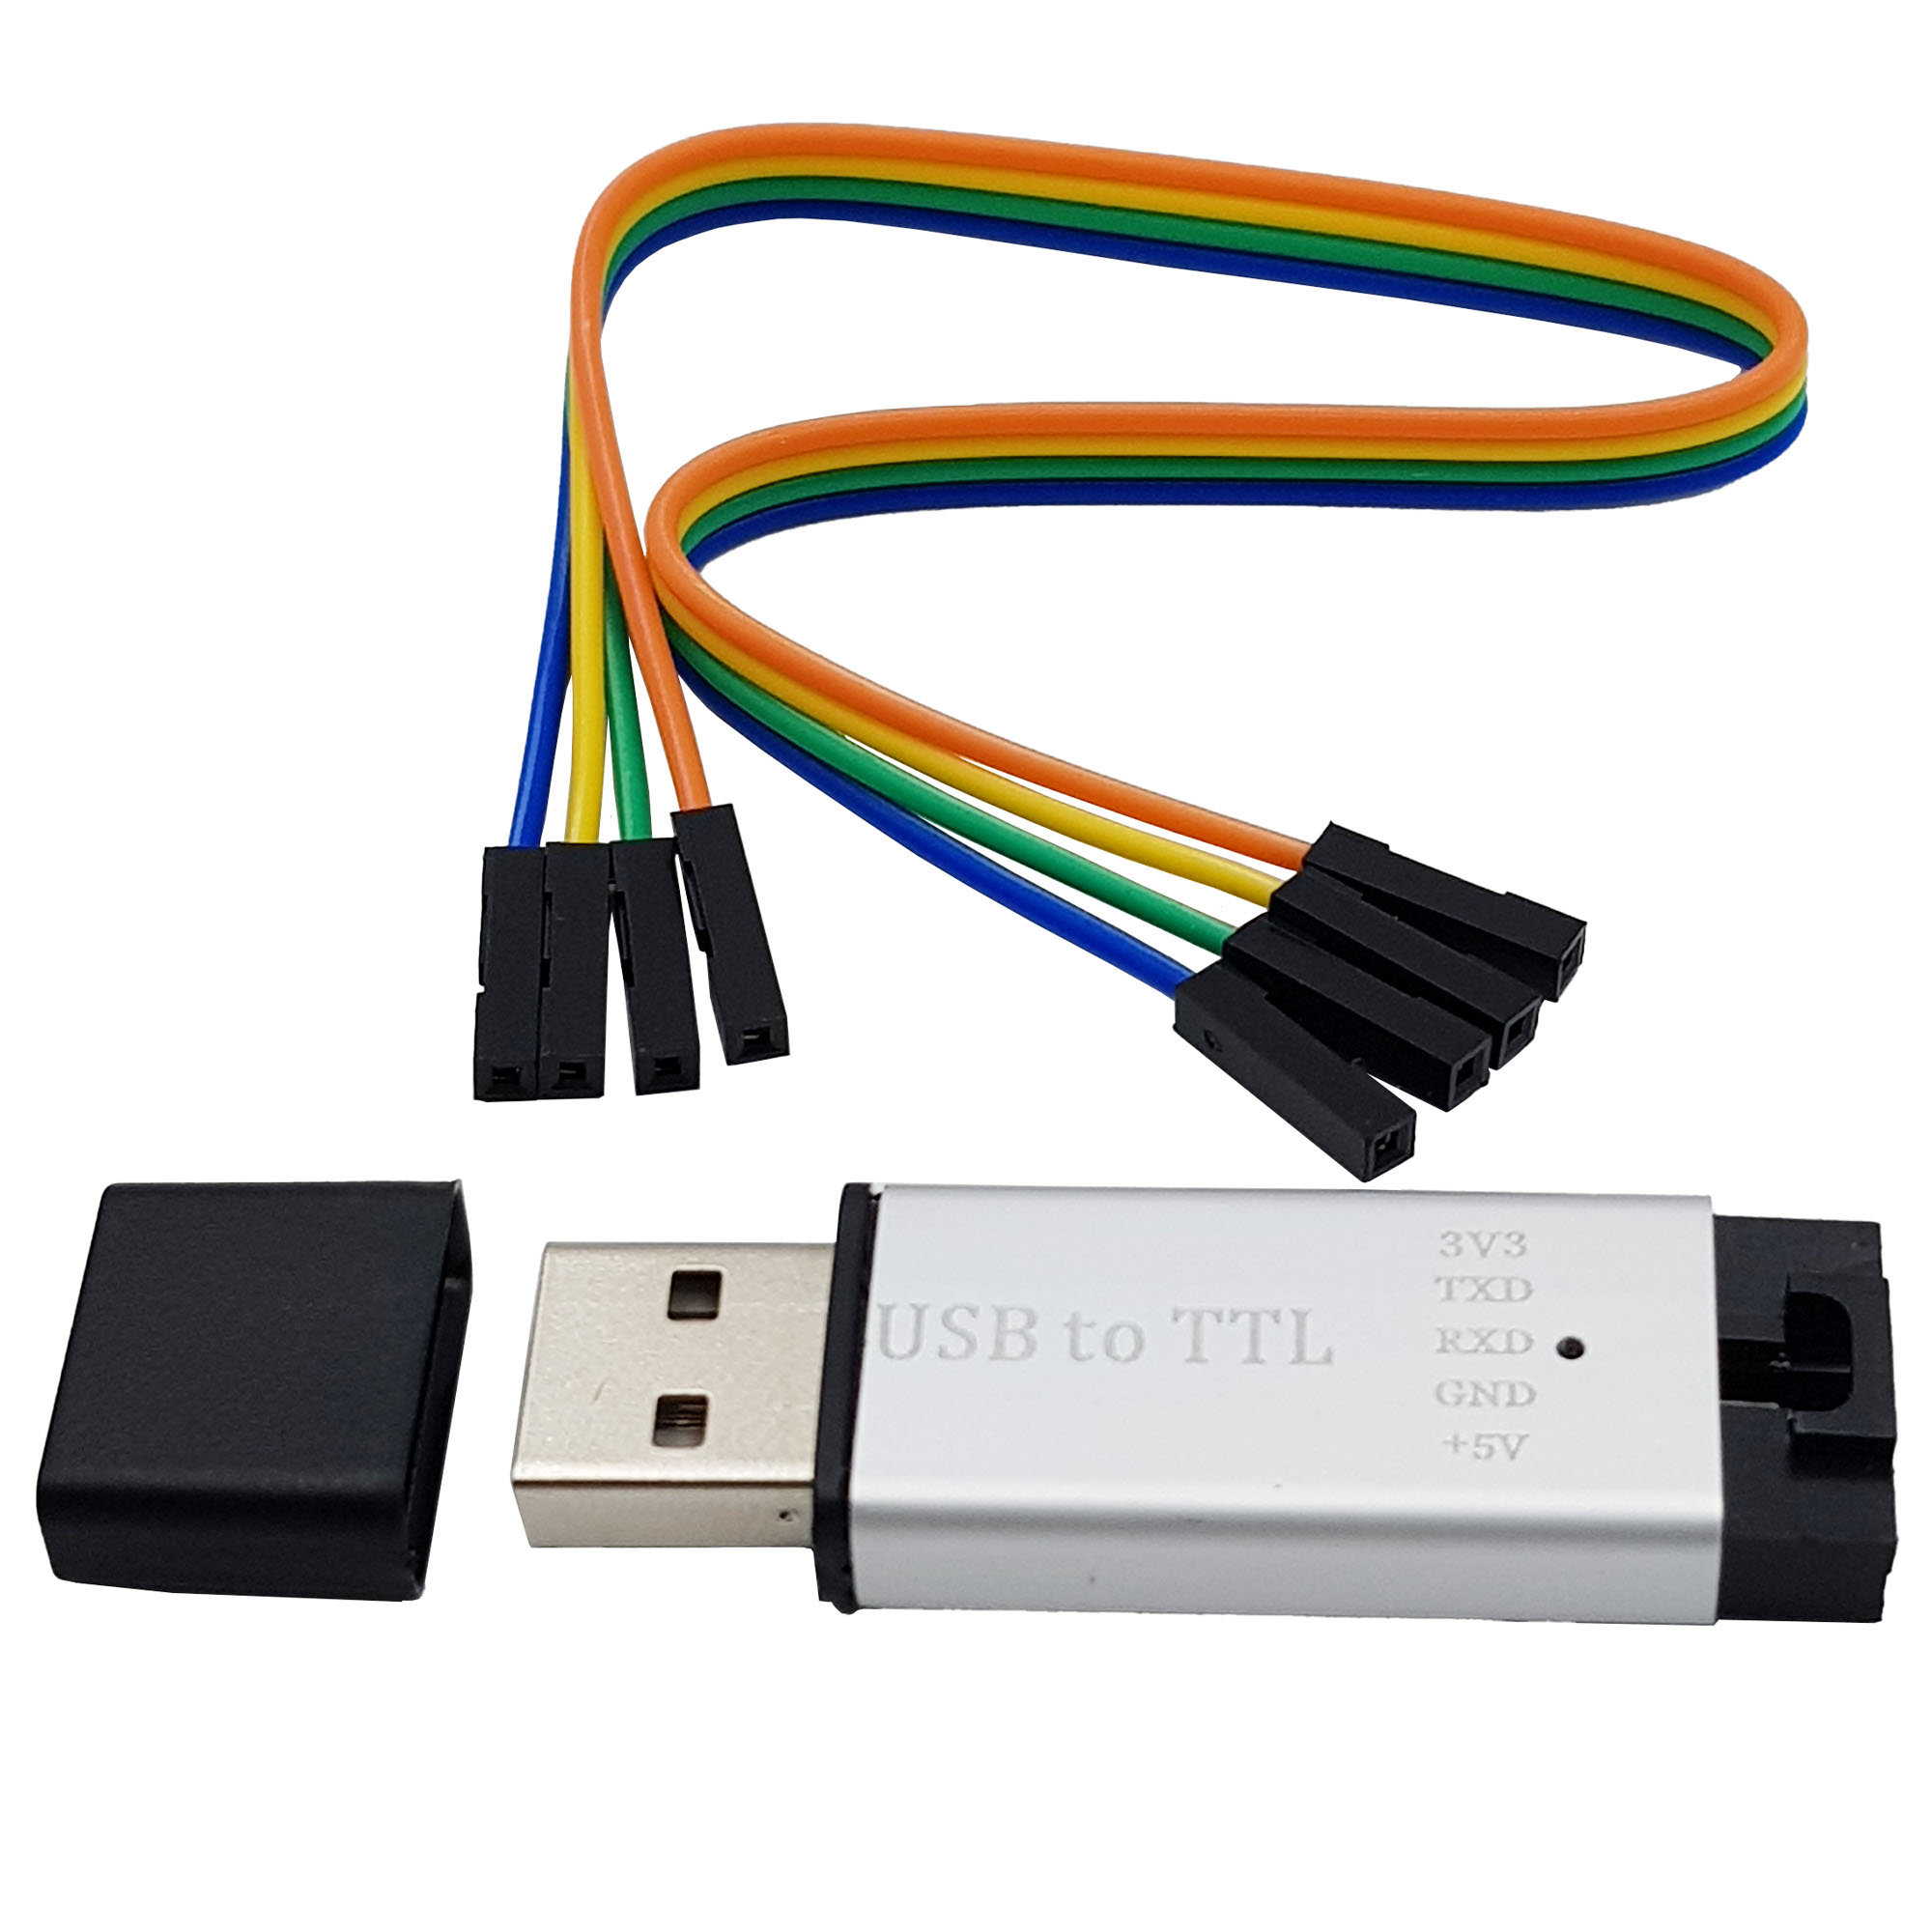 USB to TTL CP2102 vỏ nhôm